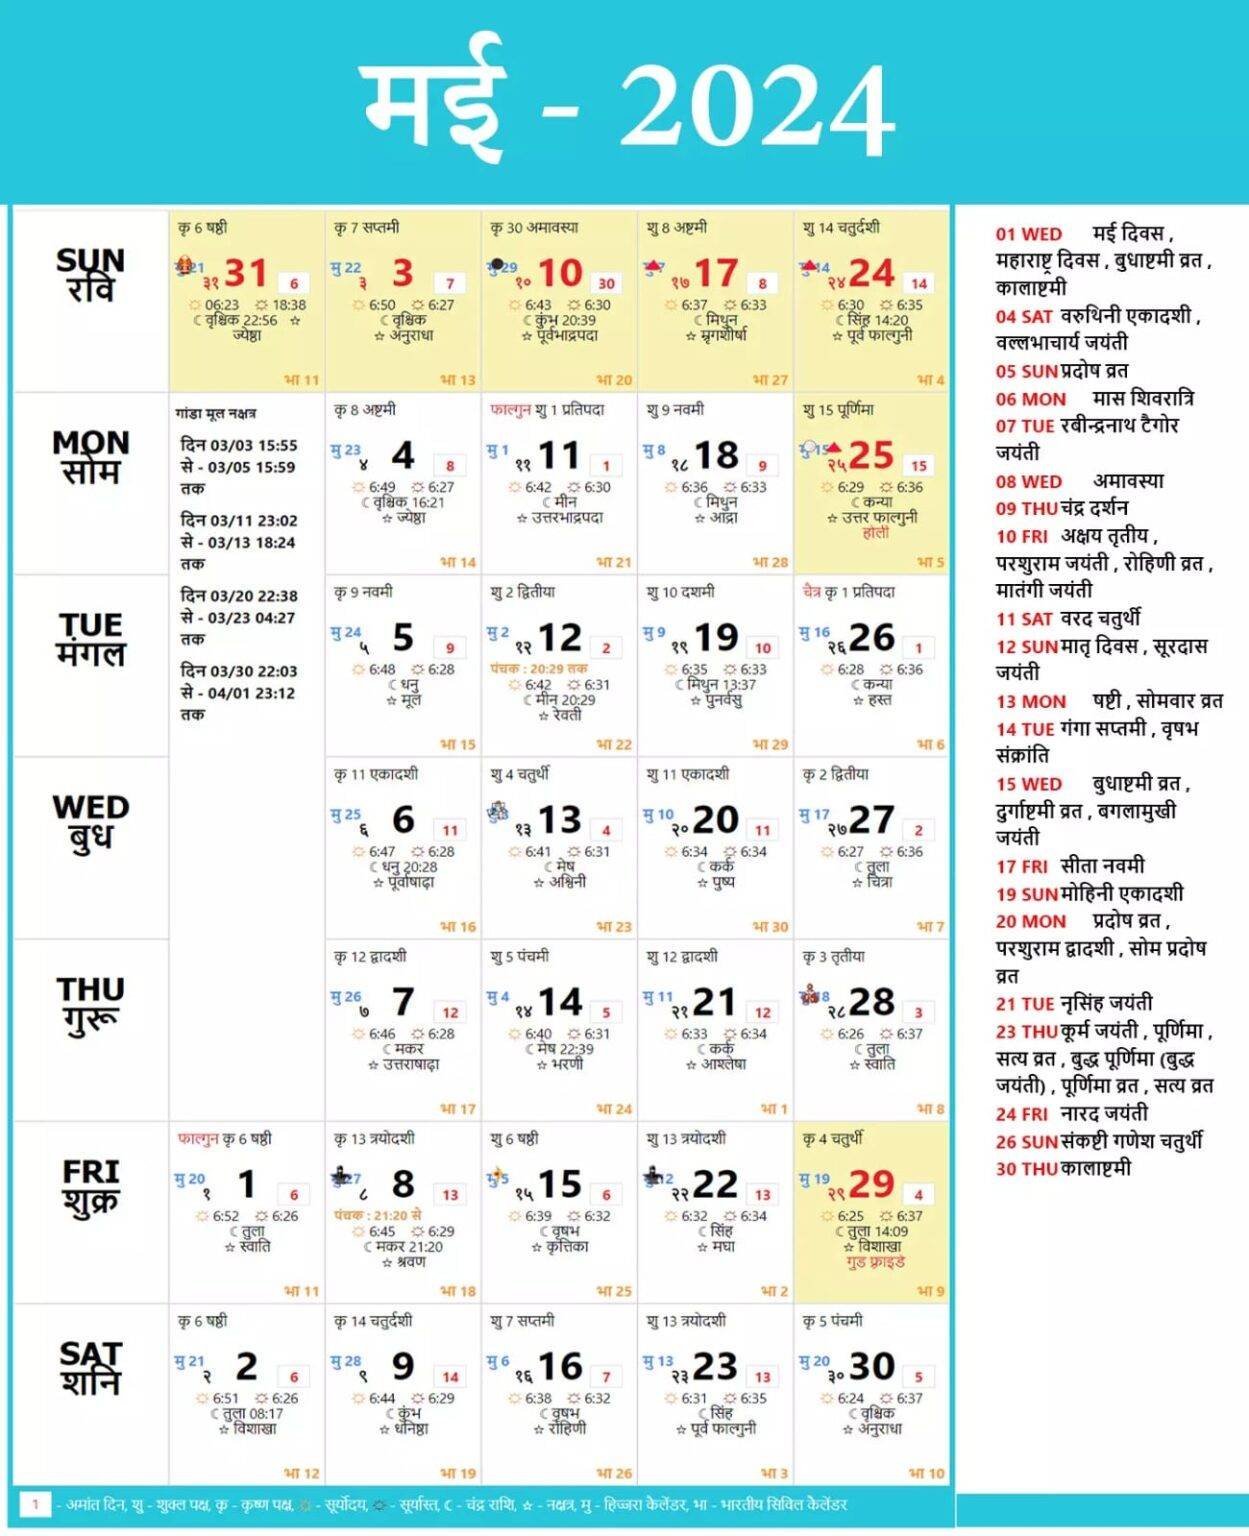 Hindu Calendar 2024 May Hindu festival 2024 May